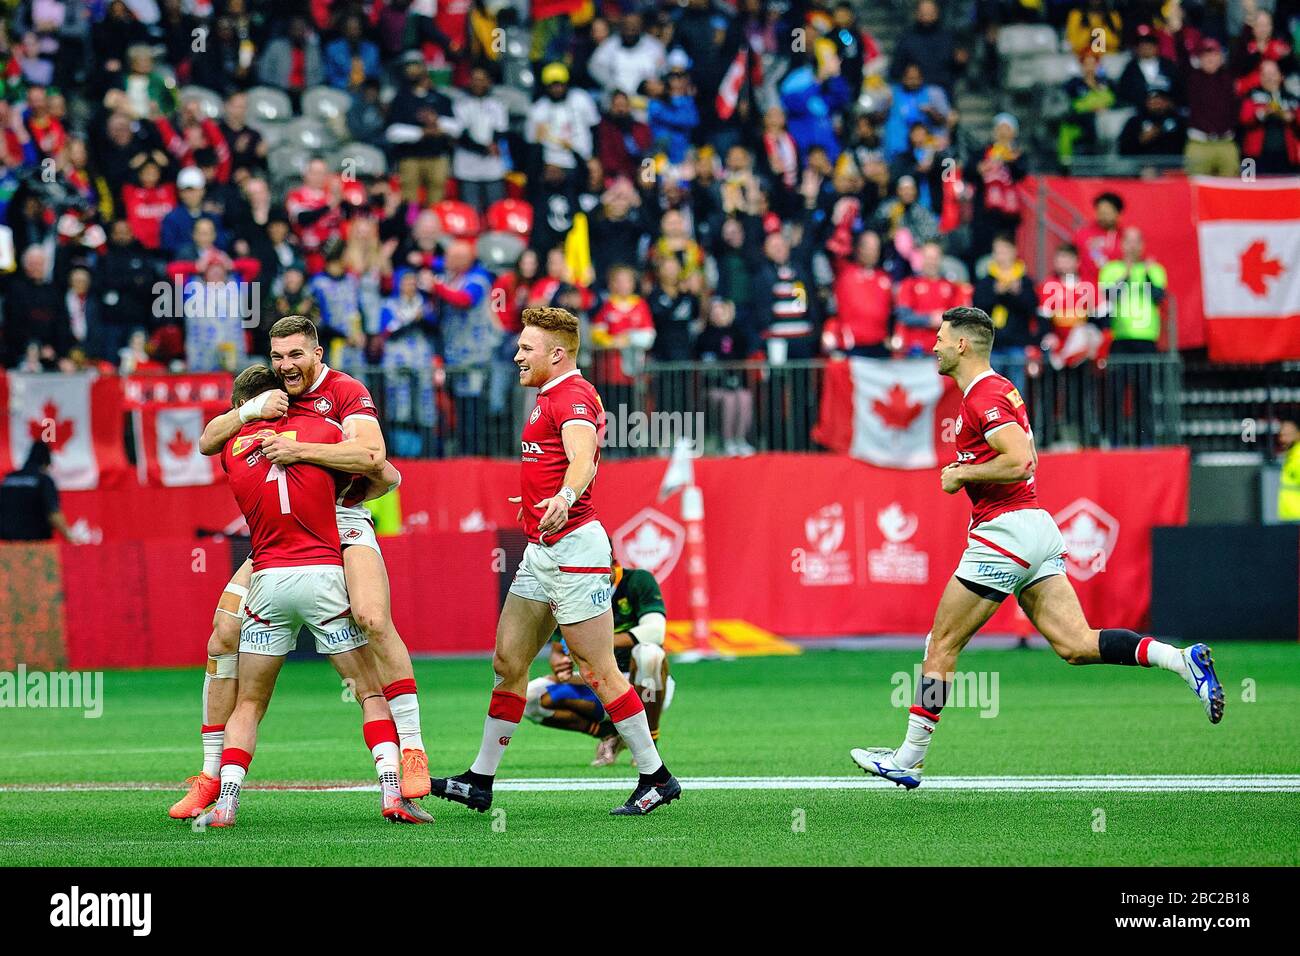 Vancouver, Canada. 8th marzo 2020. Il Canada festeggia dopo aver sconfitto il Sudafrica per vincere il bronzo durante il giorno 2 - 2020 HSBC World Rugby Sevens Series a Foto Stock